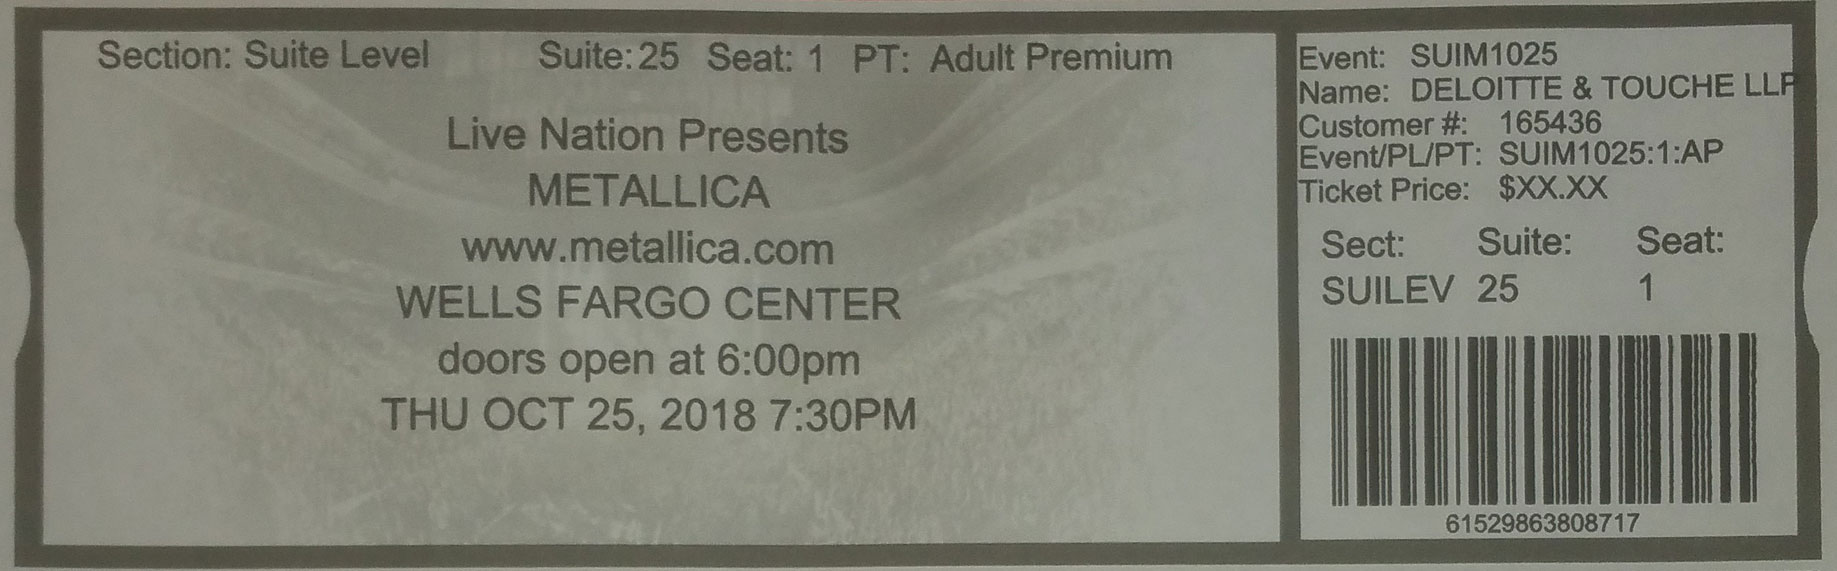 Wells Fargo Center Seating Chart Metallica